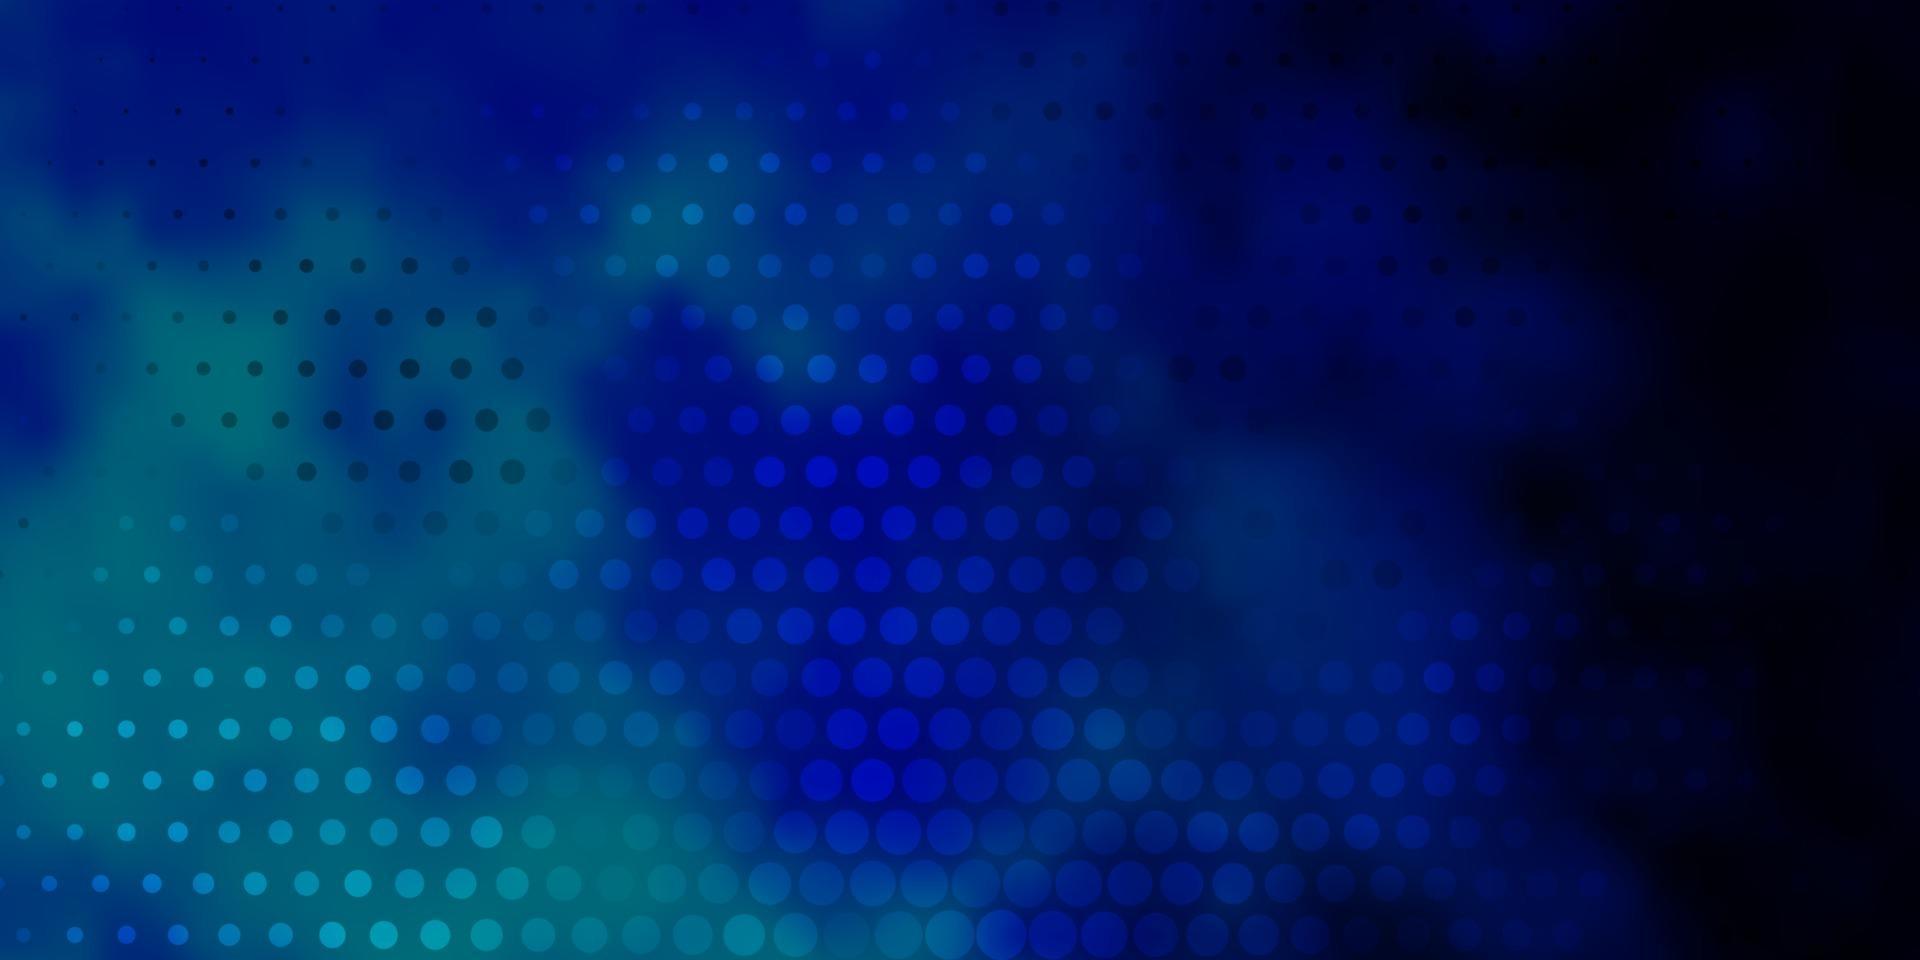 Telón de fondo de vector azul oscuro con puntos.